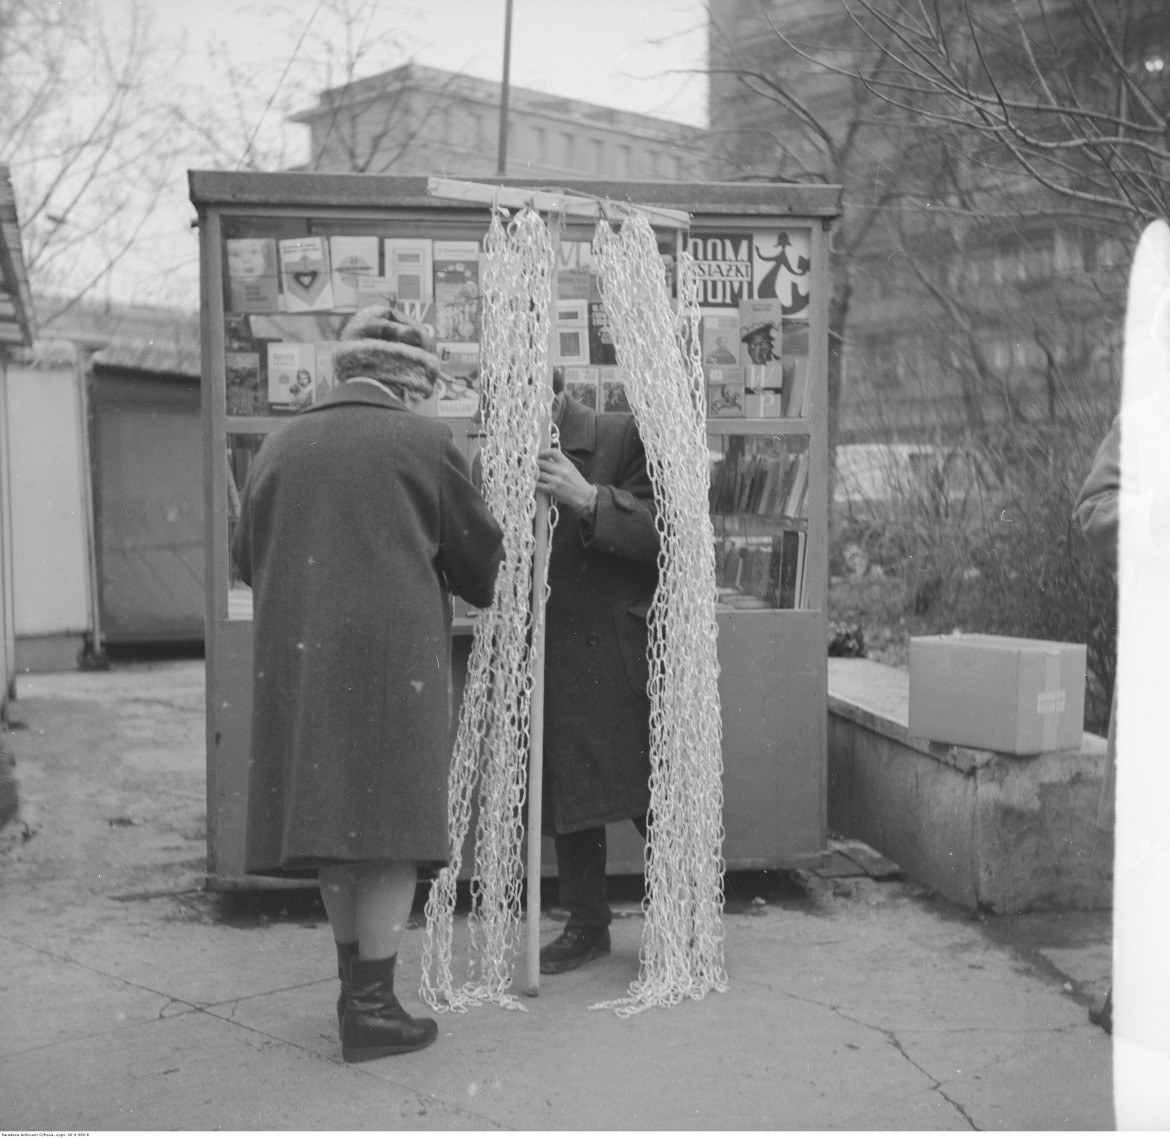 Sprzedaż łańcuchów choinkowych przy stoisku księgarskim "Domu Książki", Warszwa, 1972 / Narodowe Archiwum Cyfrowe